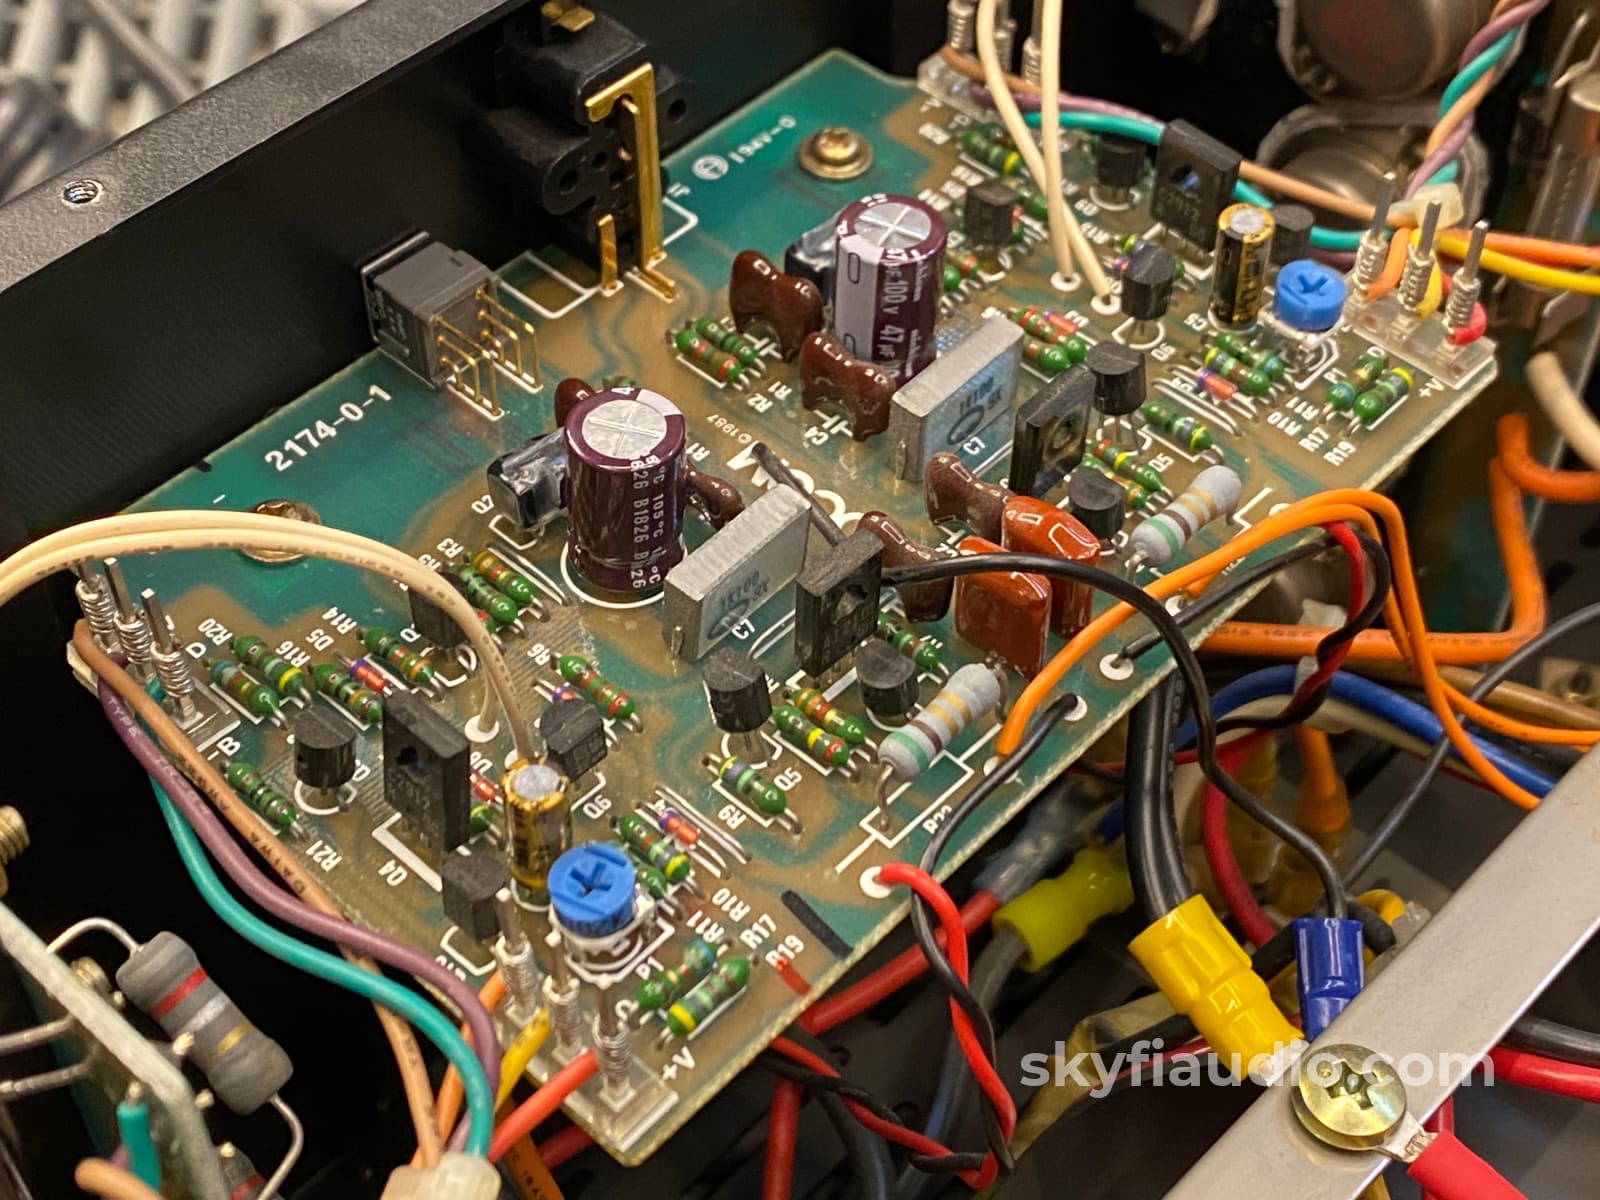 Adcom Gfa-555 Mki Stereo Amplifier - 200W X 2 Serviced